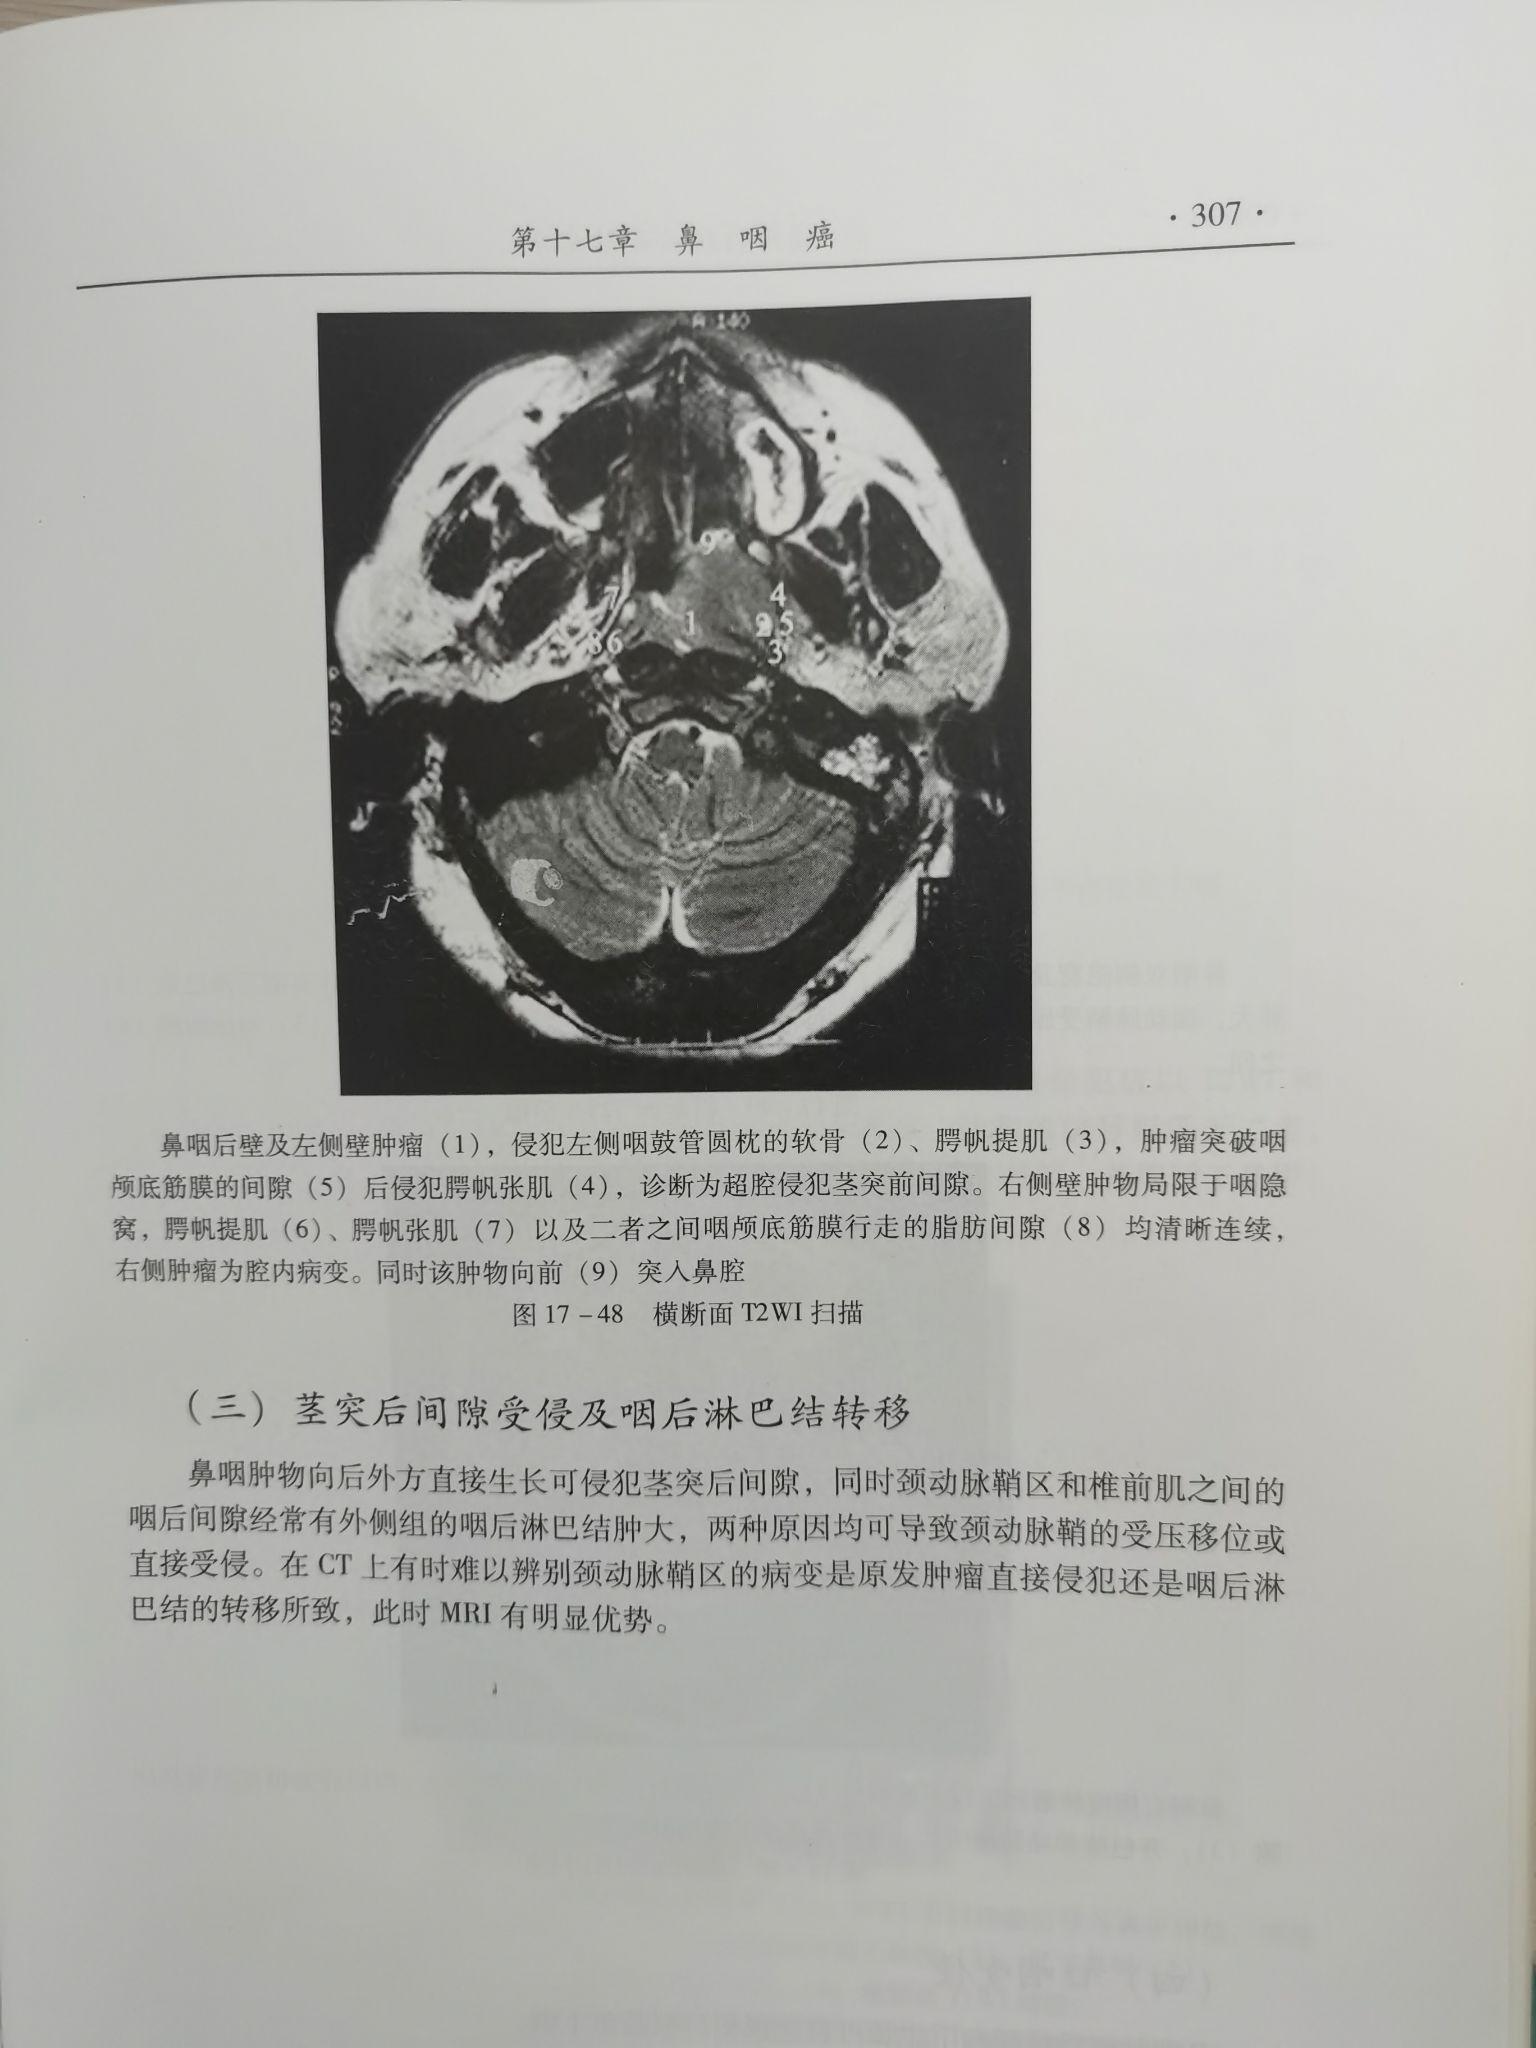 重庆医院诊断证明图片模板实拍(6张) - 我要证明网